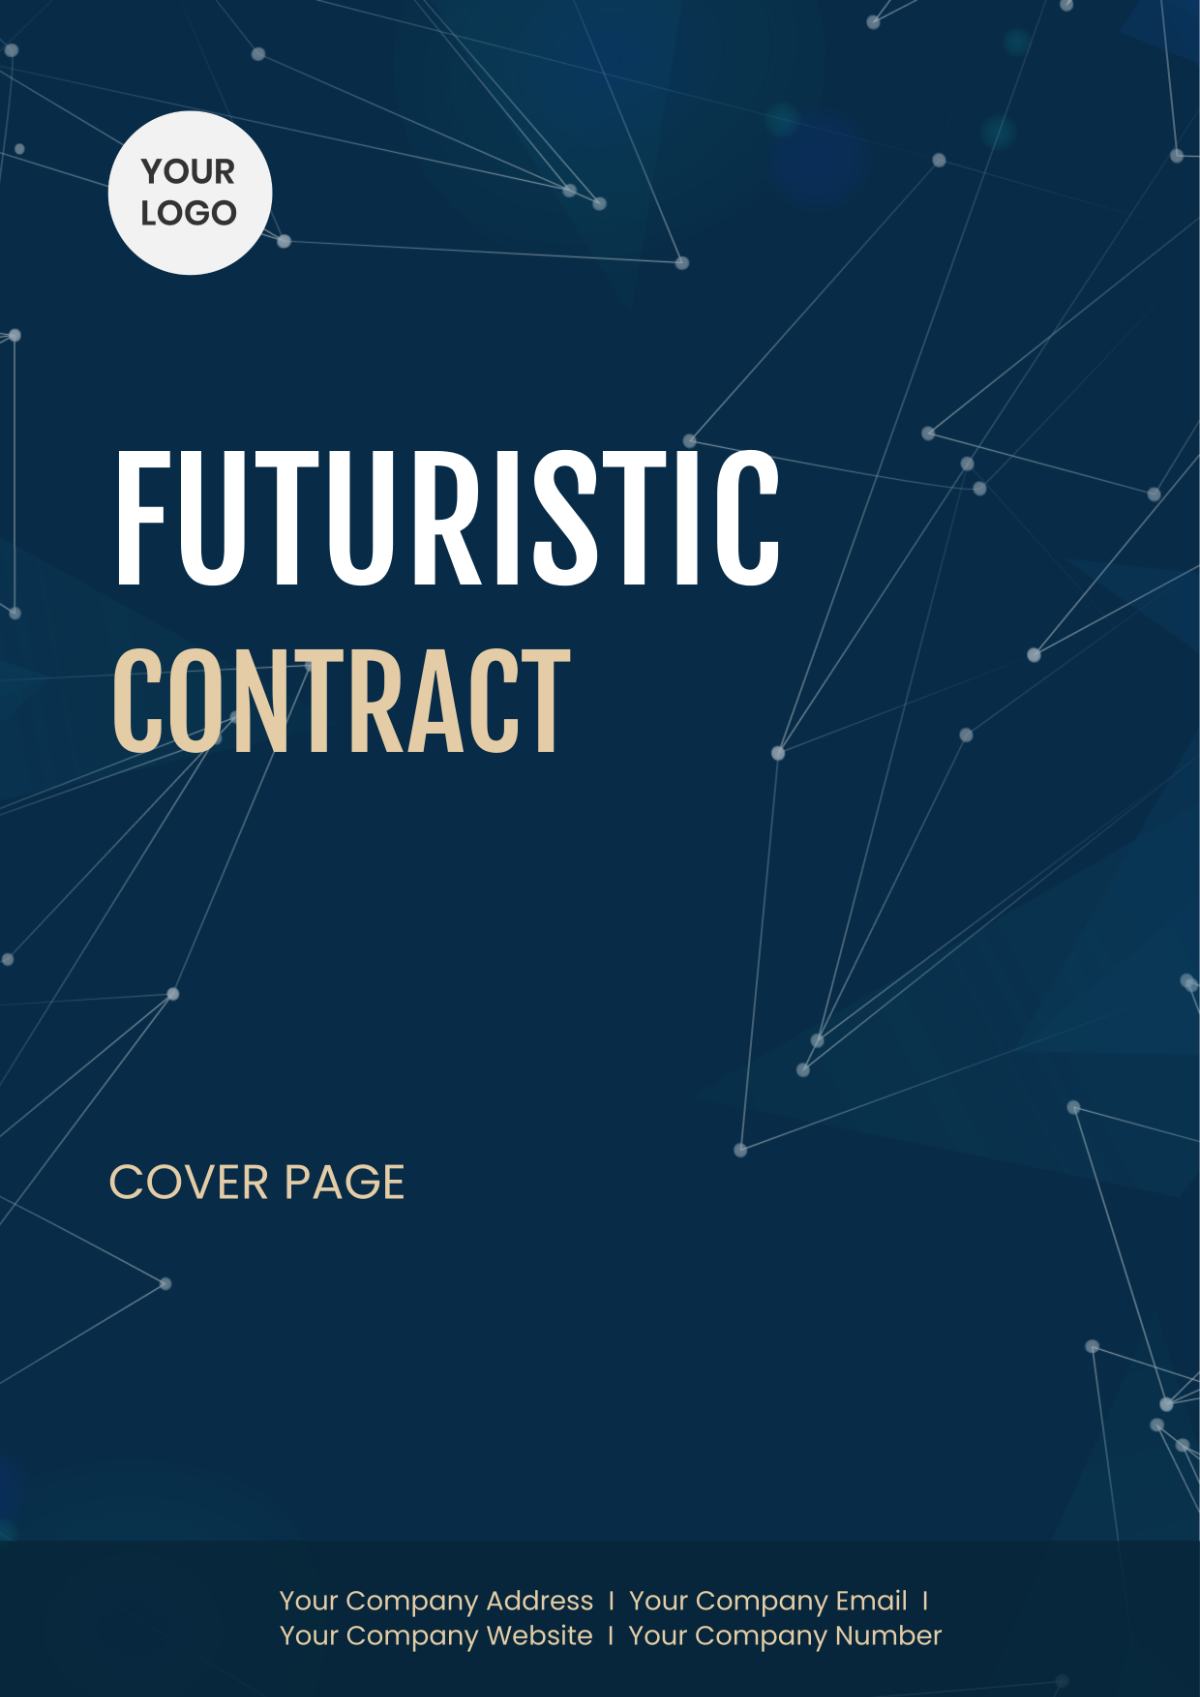 Futuristic Contract Cover Page